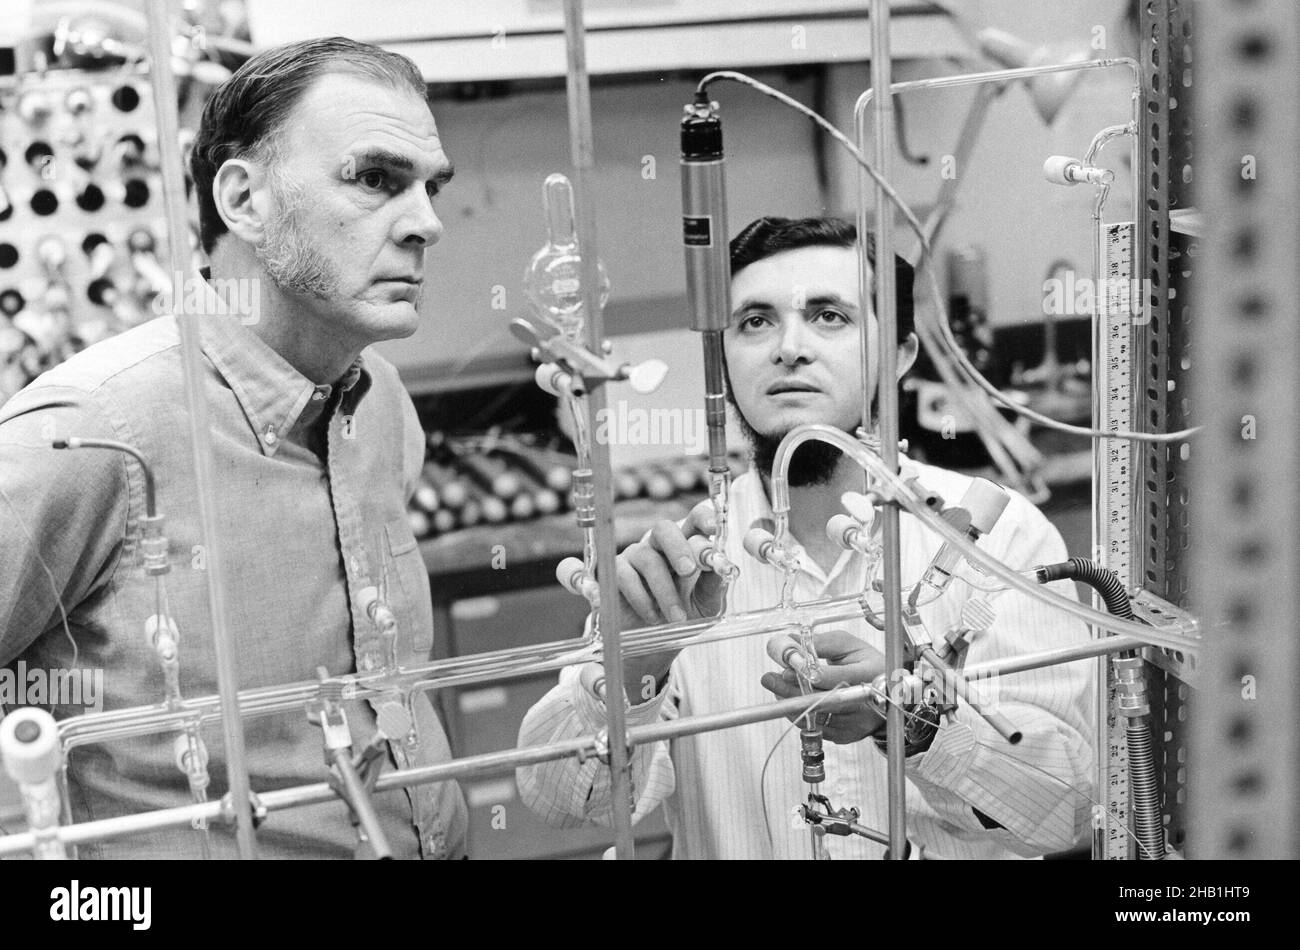 Mario Molina und Frank Sherwood Rowland, die 1995 den Nobelpreis für Chemie teilten, waren die Vorläufer des Montrealer Protokolls, dank ihrer Forschung zur Rolle von Fluorchlorkohlenwasserstoffen (FCKW) bei der Zerstörung des atmosphärischen Ozons. Stockfoto